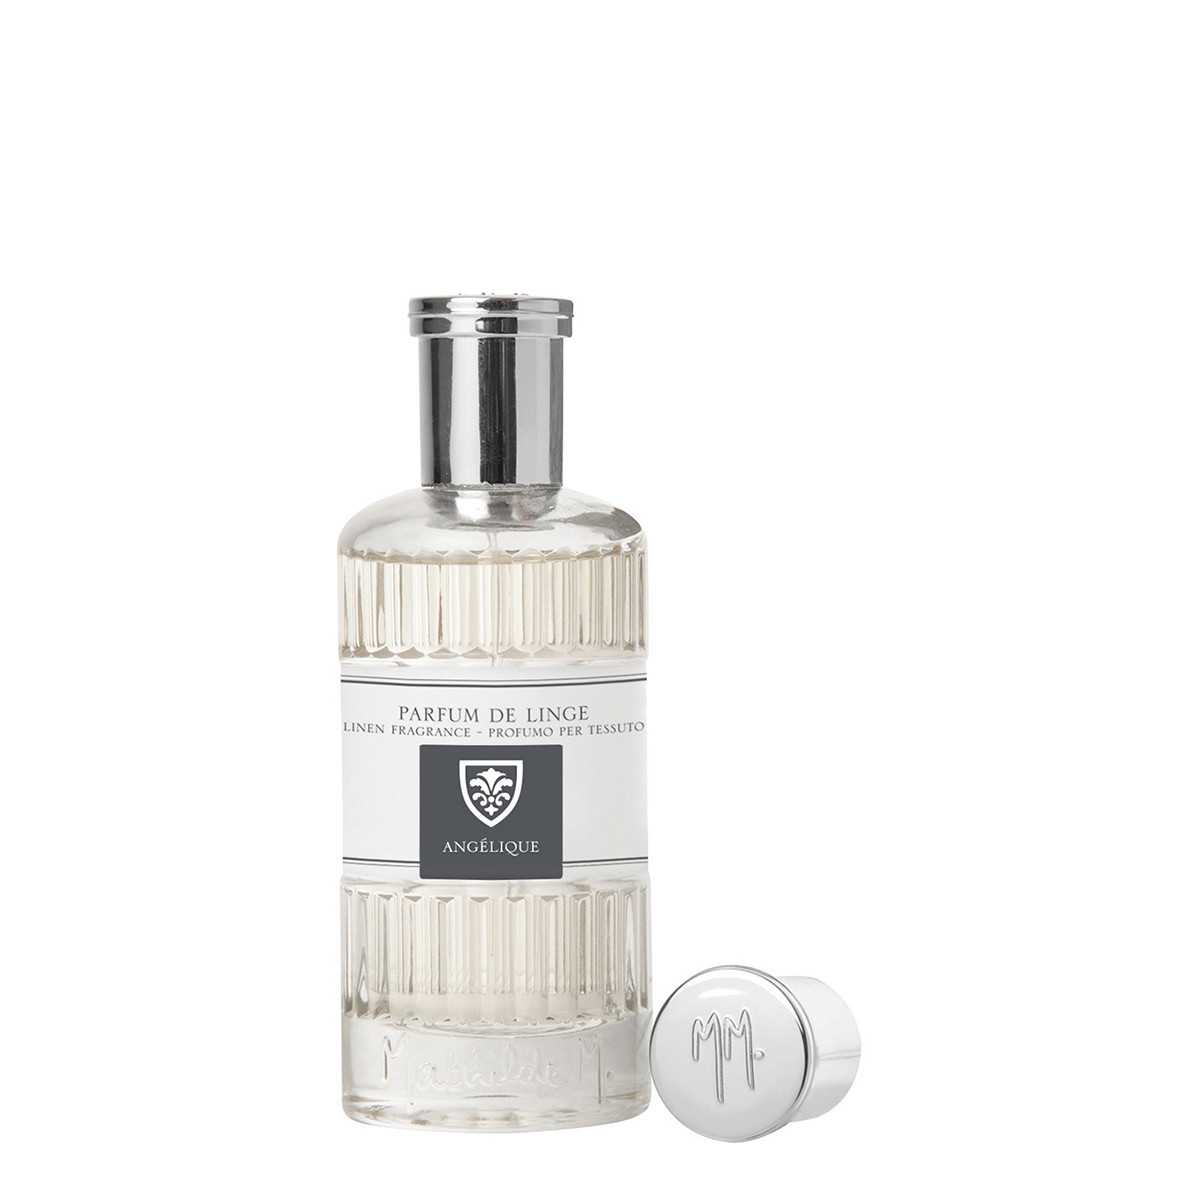 Lino perfume 75 ml - Angelique